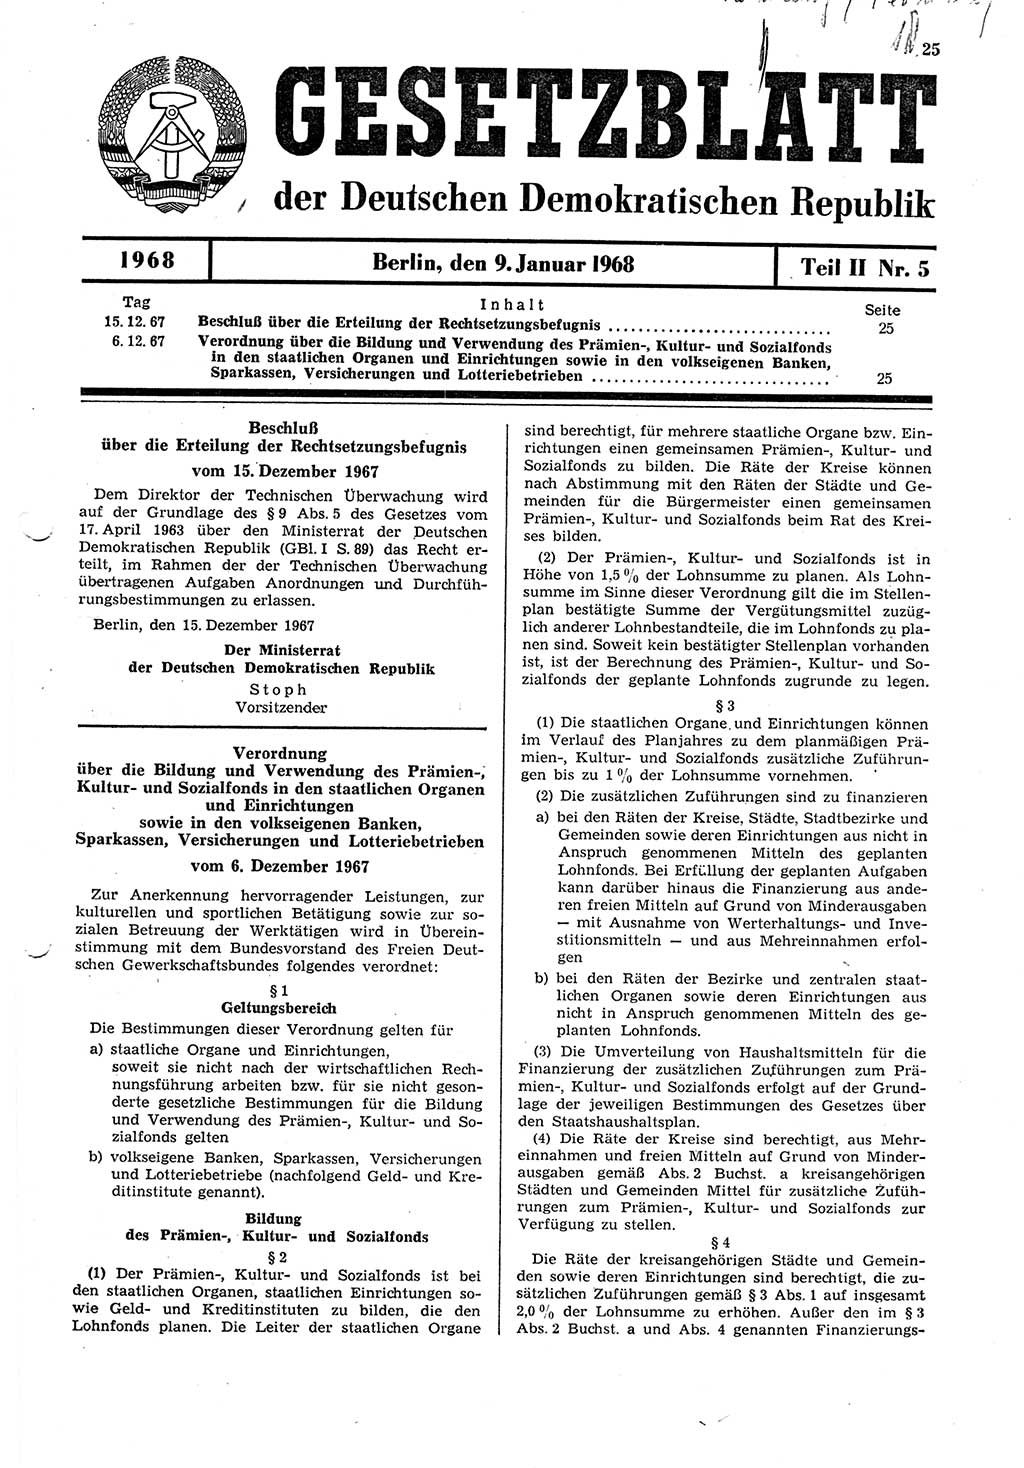 Gesetzblatt (GBl.) der Deutschen Demokratischen Republik (DDR) Teil ⅠⅠ 1968, Seite 25 (GBl. DDR ⅠⅠ 1968, S. 25)